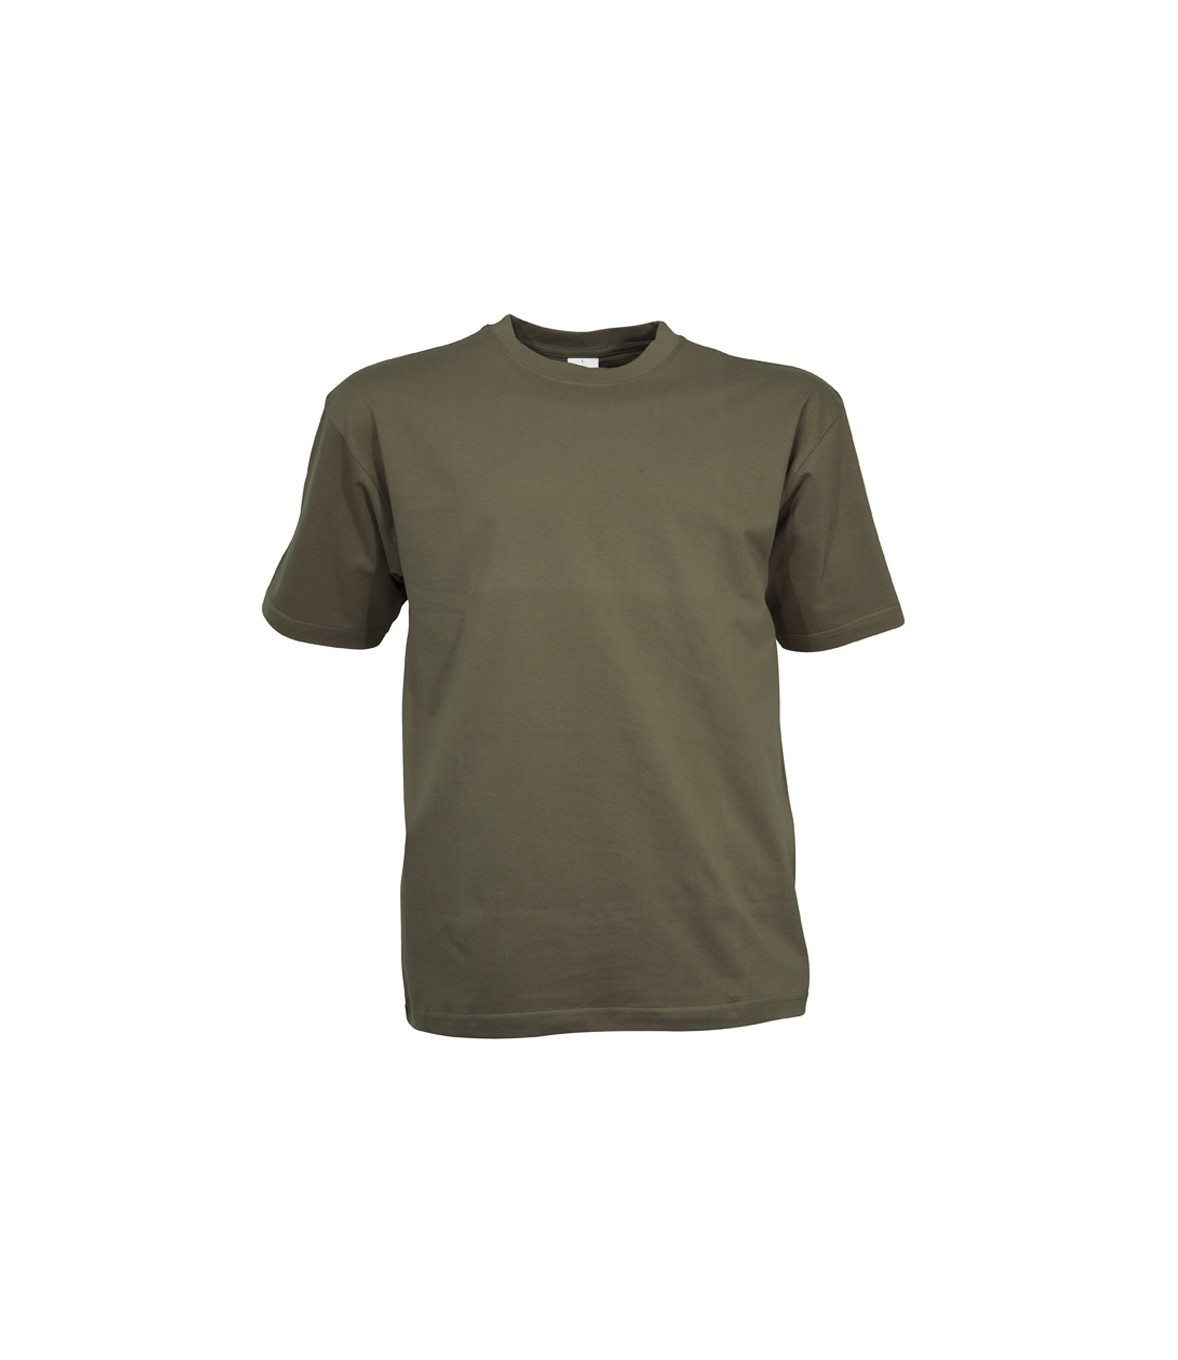 Rose/vert militaire GildanGildan G2400 T-shirt à manches longues en coton pour homme Taille S Marque  